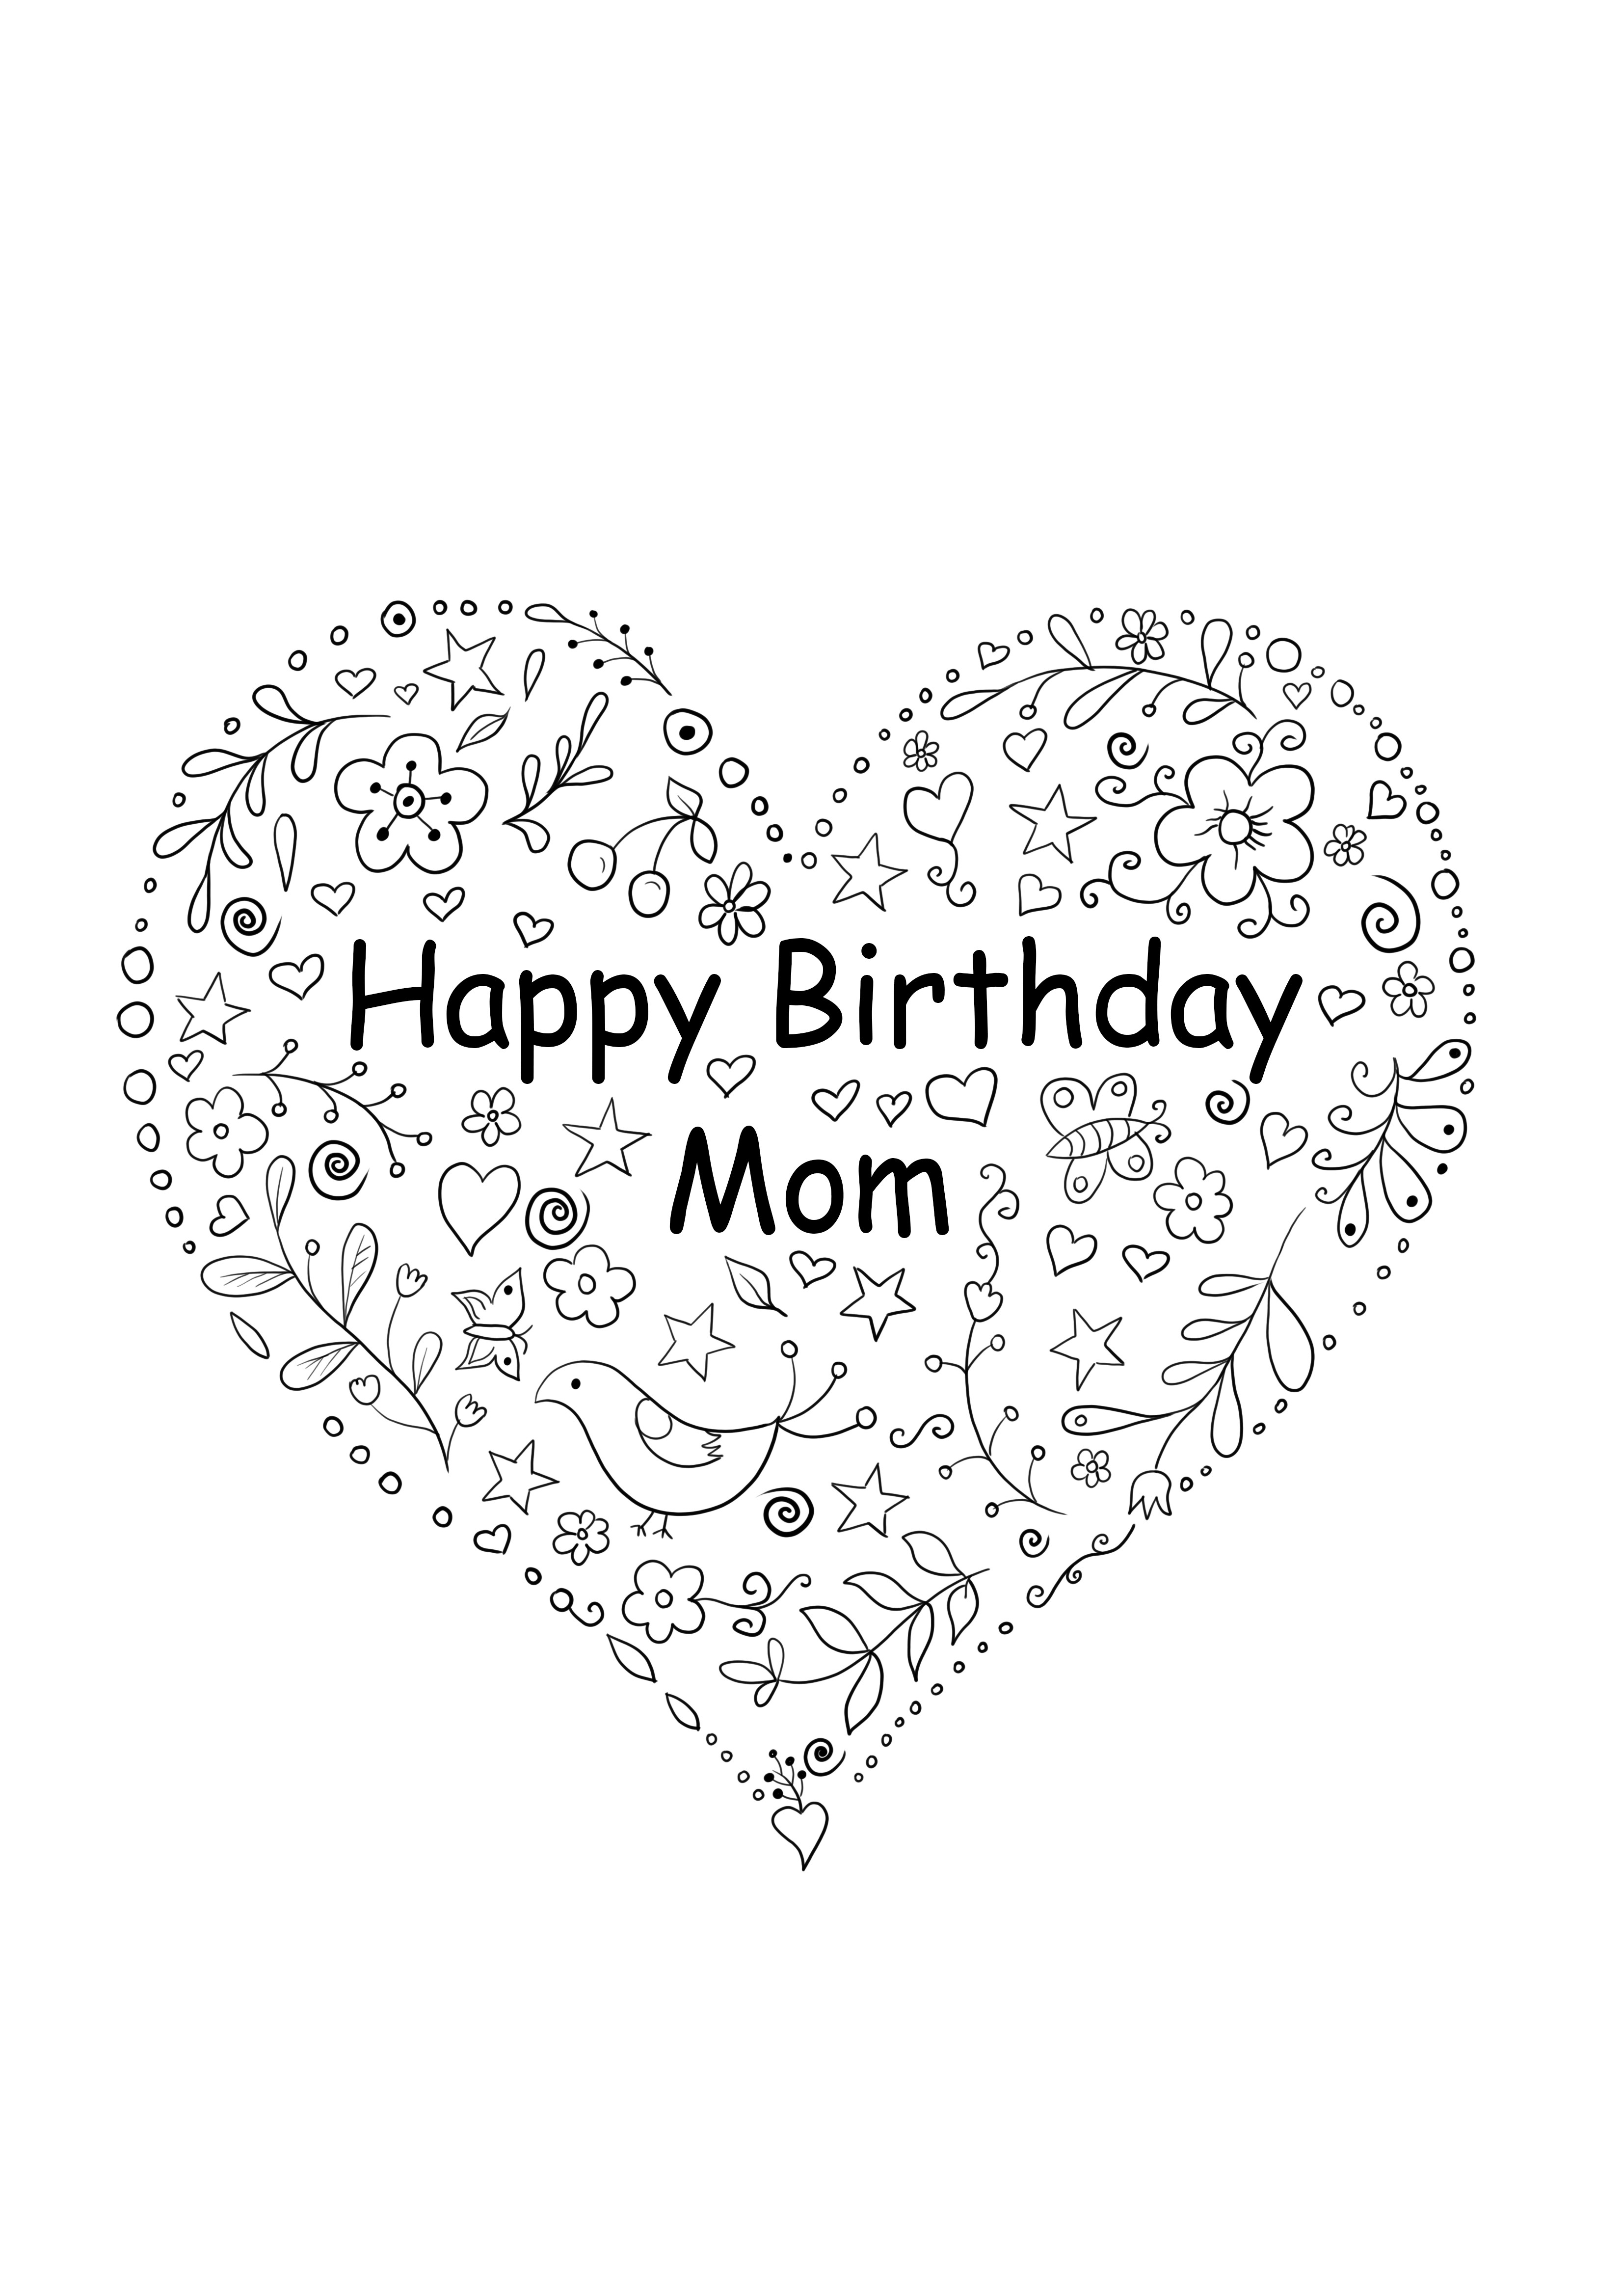 お母さんの誕生日のハート形のカードを無料で印刷できます